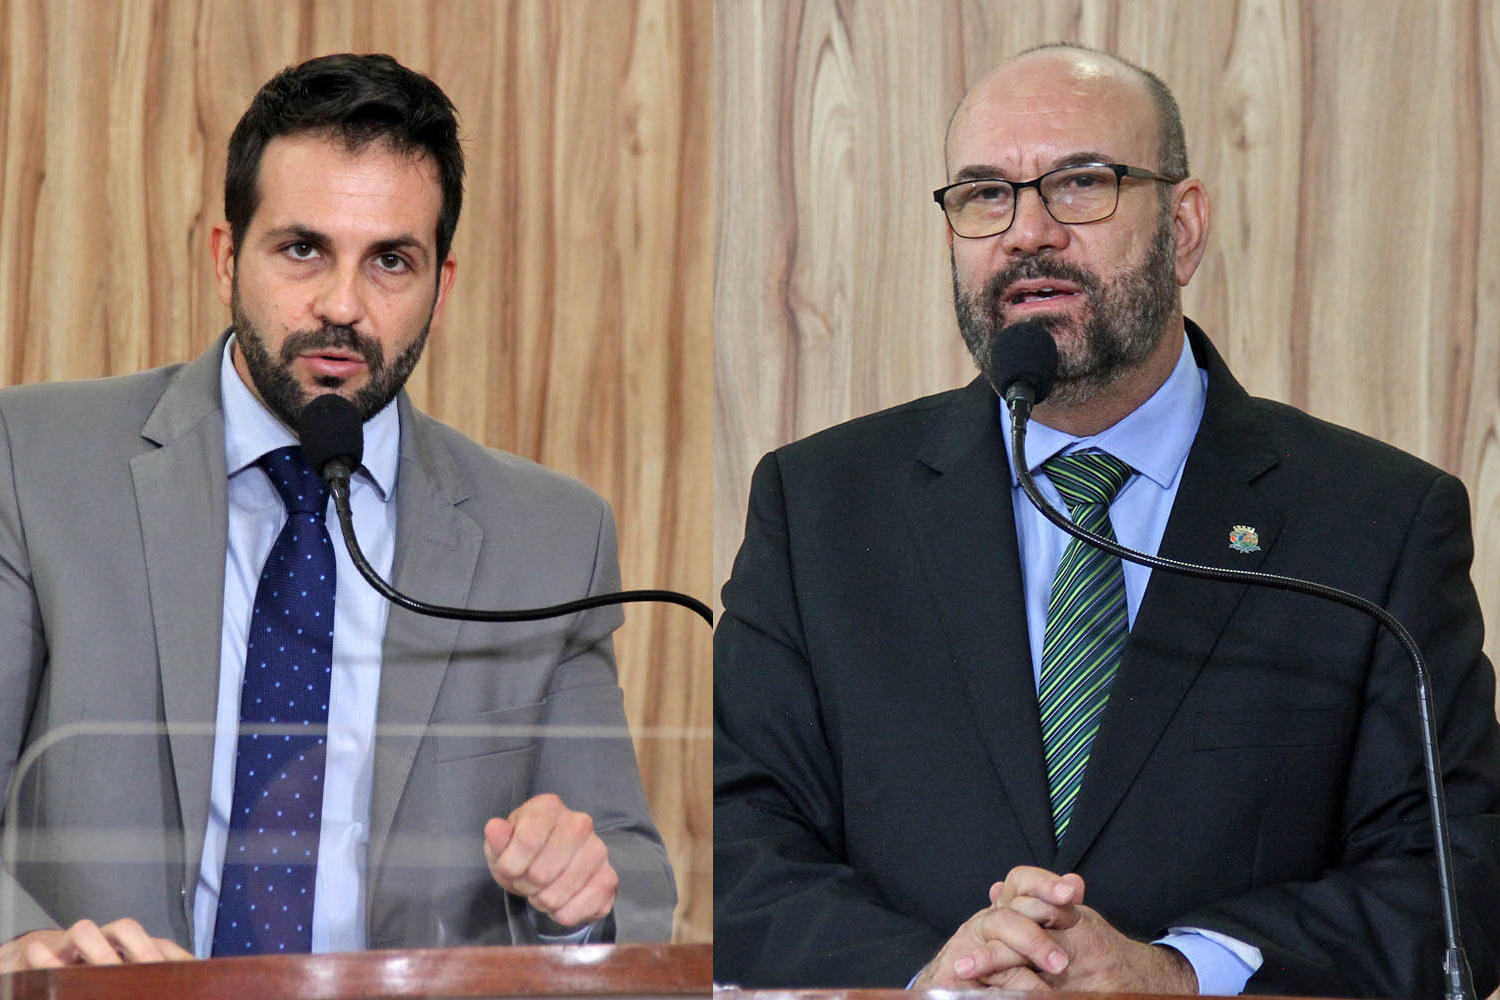 #PraCegoVer: Foto-montagem mostra o vereador Dr. André à esquerda e o vereador César Rocha à direita. Ambos discursam na tribuna da Câmara.